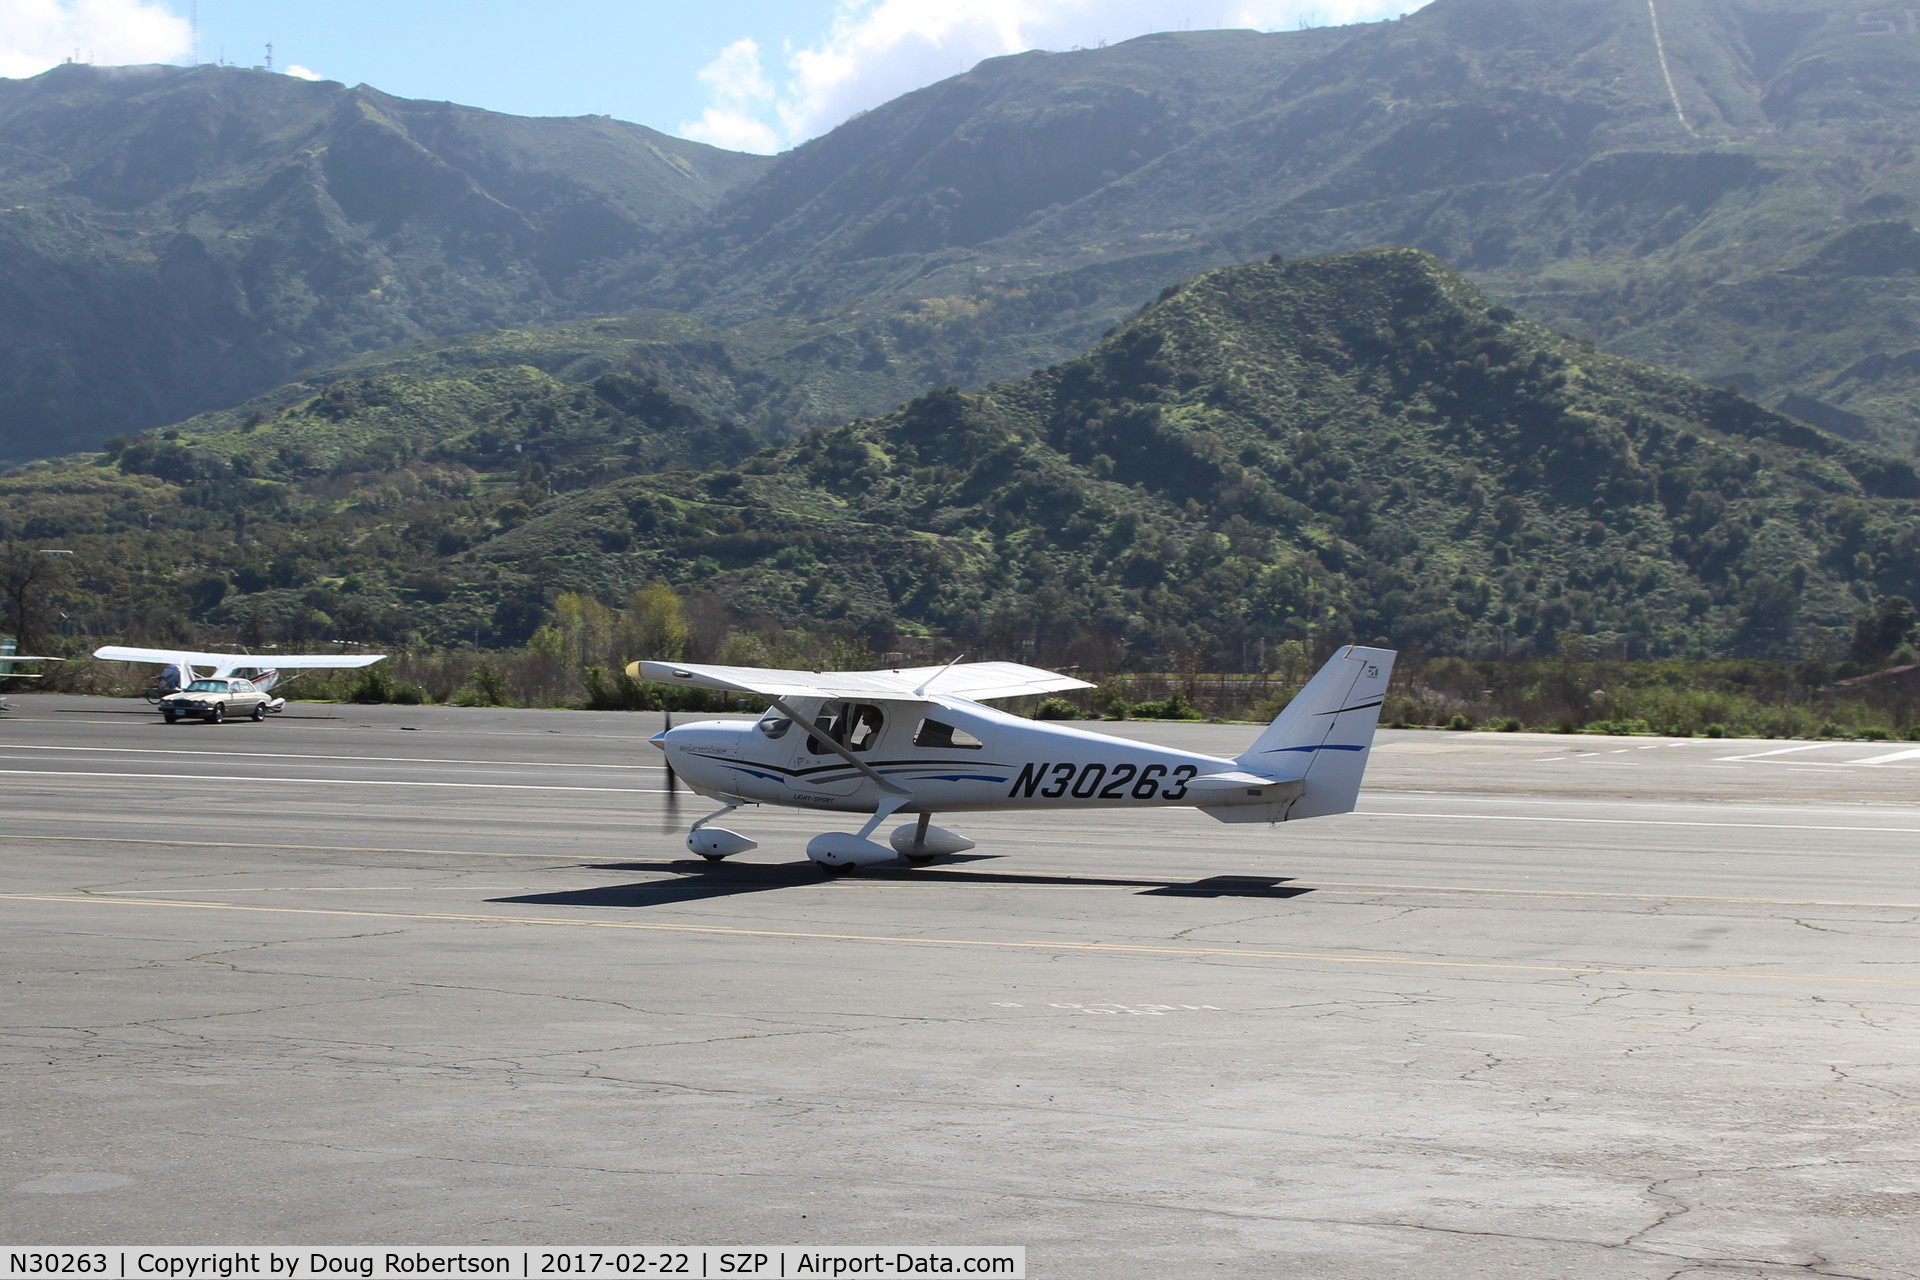 N30263, Cessna 162 Skycatcher C/N 16200092, 2011 Cessna 162 SKYCATCHER LSA, Continental O-200D lightweight 100 Hp, taxi back